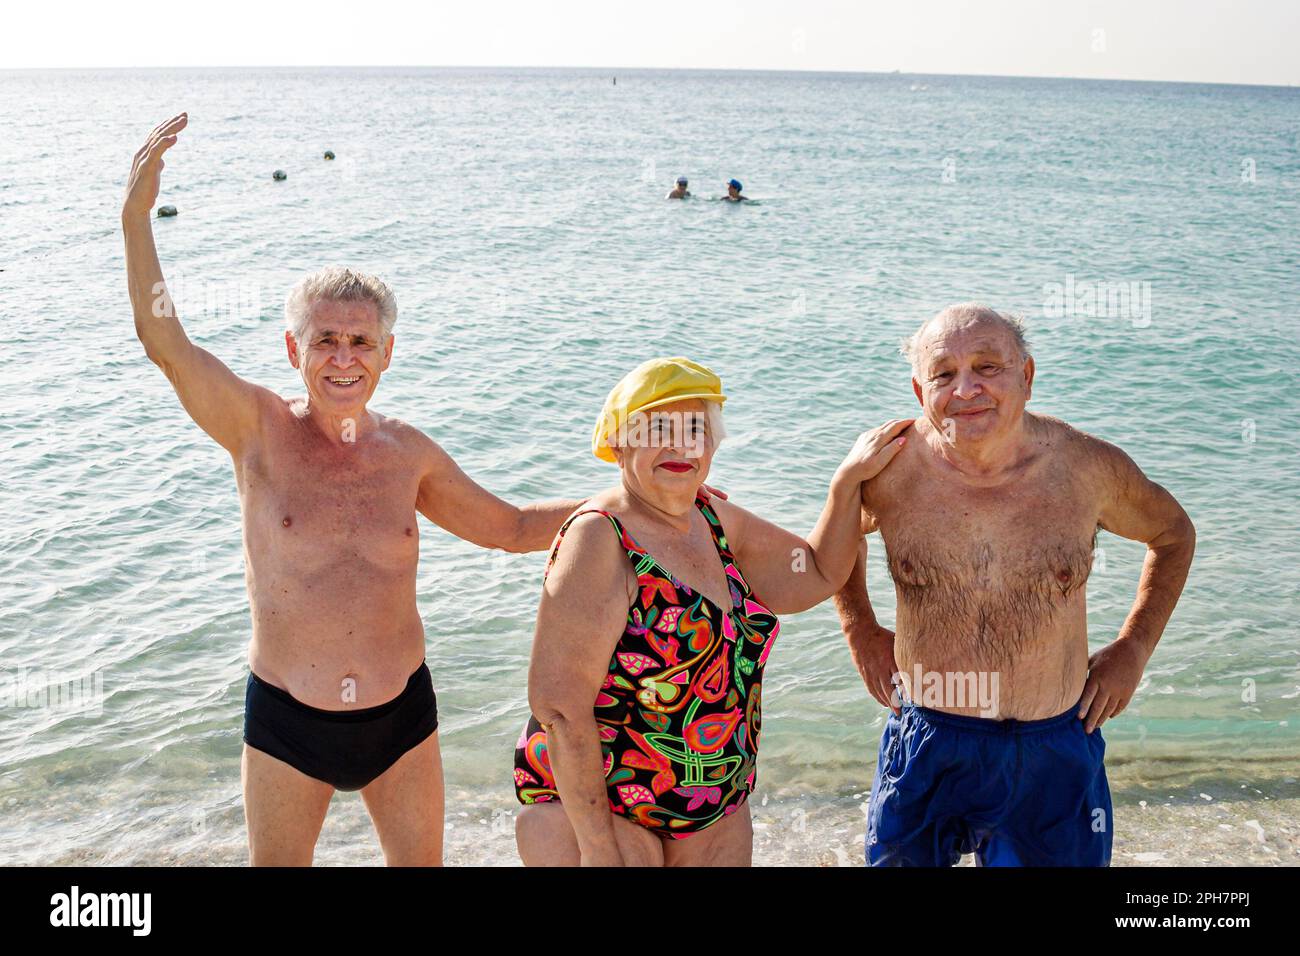 Miami Beach Florida,Eastern European Ebreo immigranti immigrati sunbasher sunbathers,surf sabbia sovrappeso obesità obese grasso anziani uomo uomini WO Foto Stock